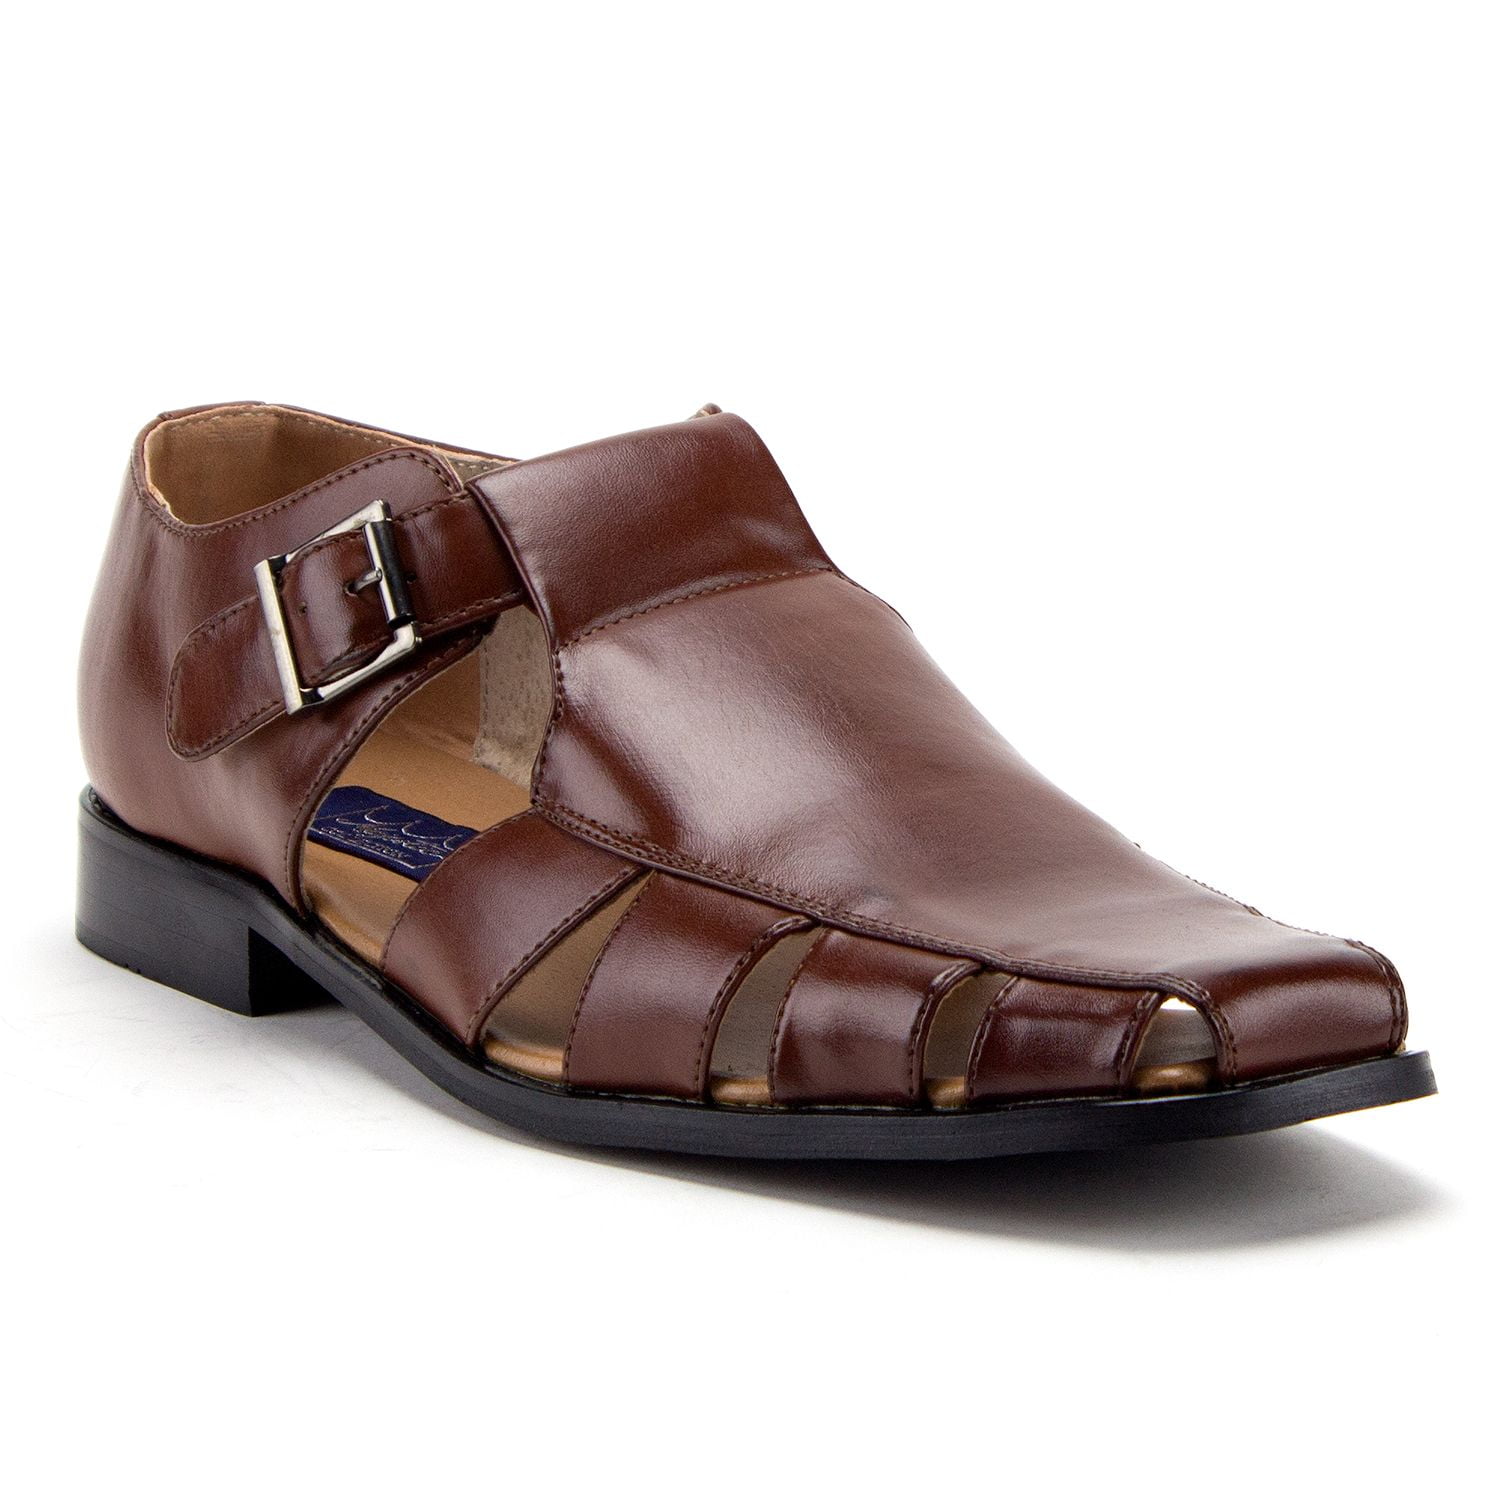 J'aime Aldo Men's 44390 Vented Closed Toe Dress Fisherman Sandals Shoes (14, Cognac) -